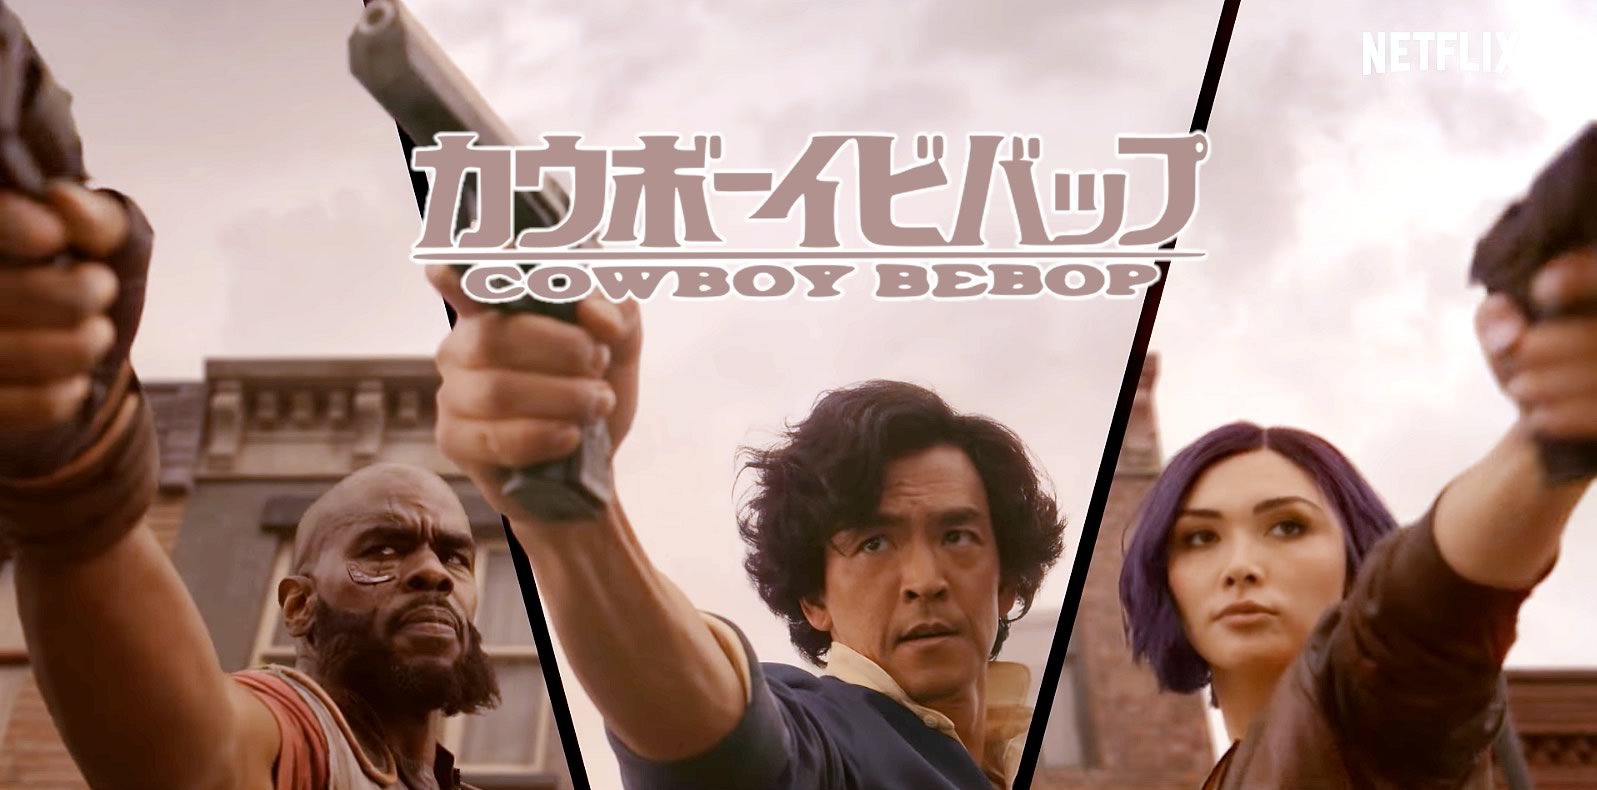 Cowboy Bebop Netflix divulga trailer Sessão perdida da série live-action estrelada por John Cho